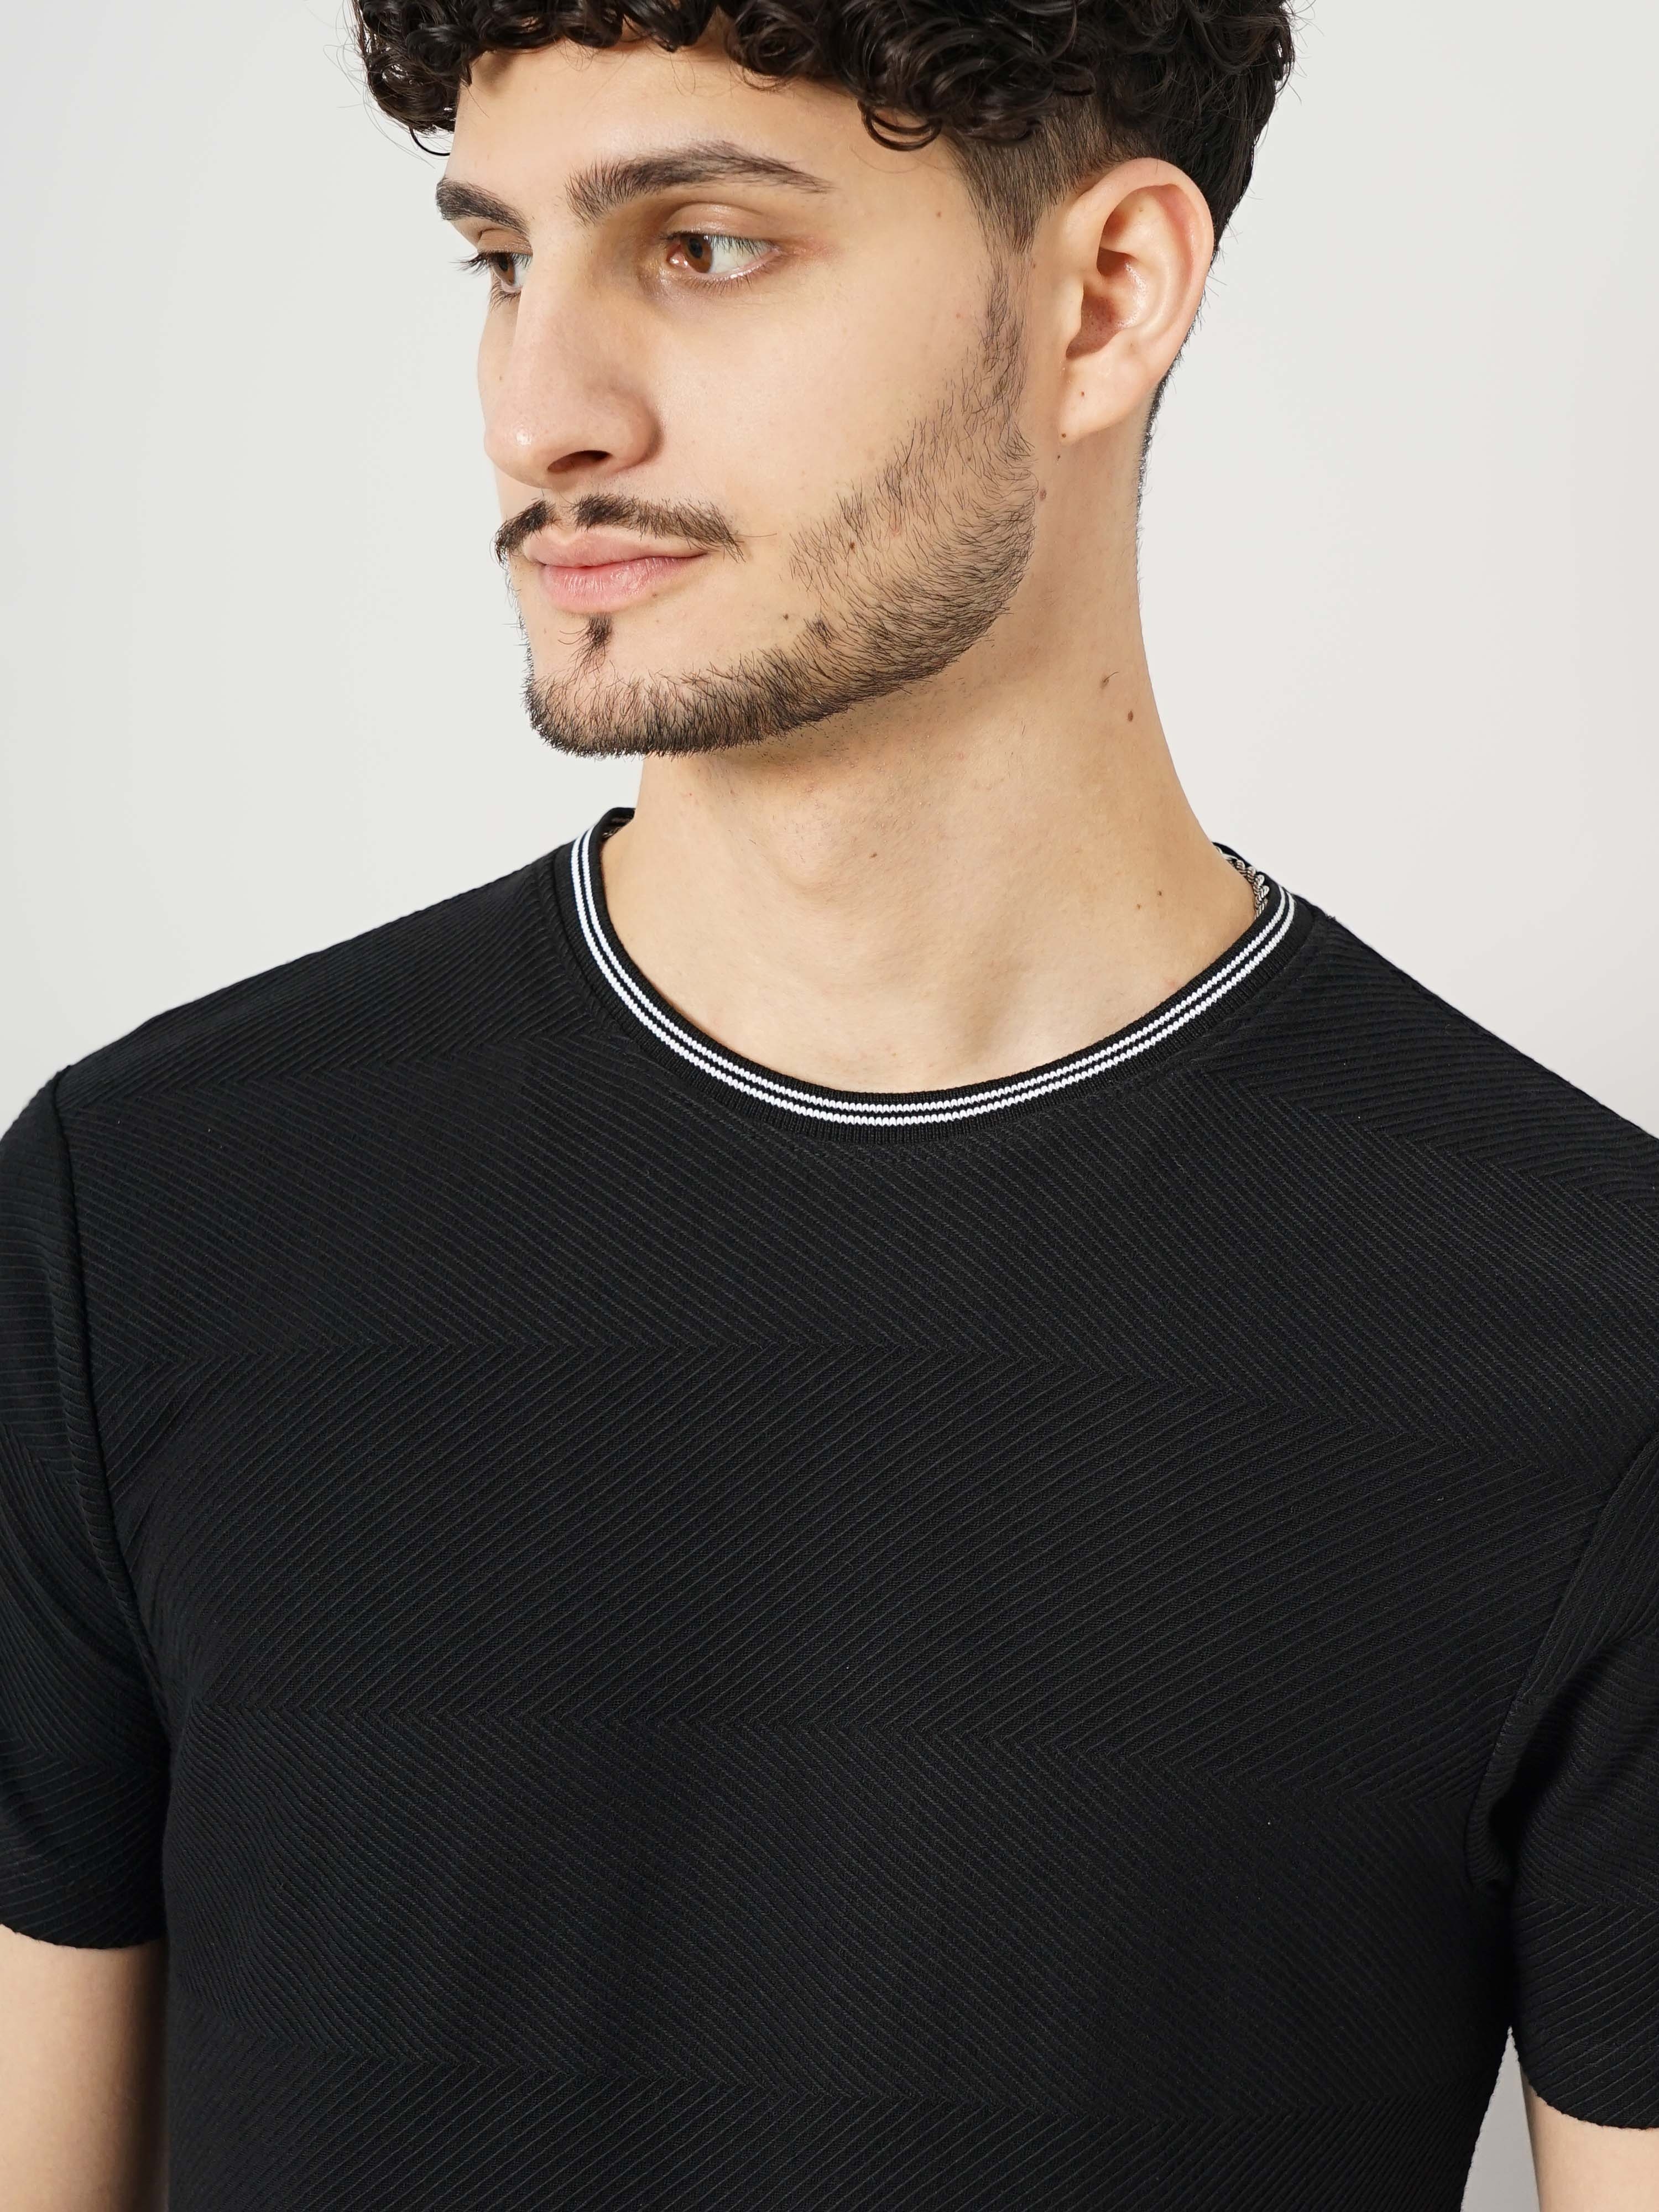 Celio Men's Solid Black Half Sleeve Round Neck Fashion Tshirt